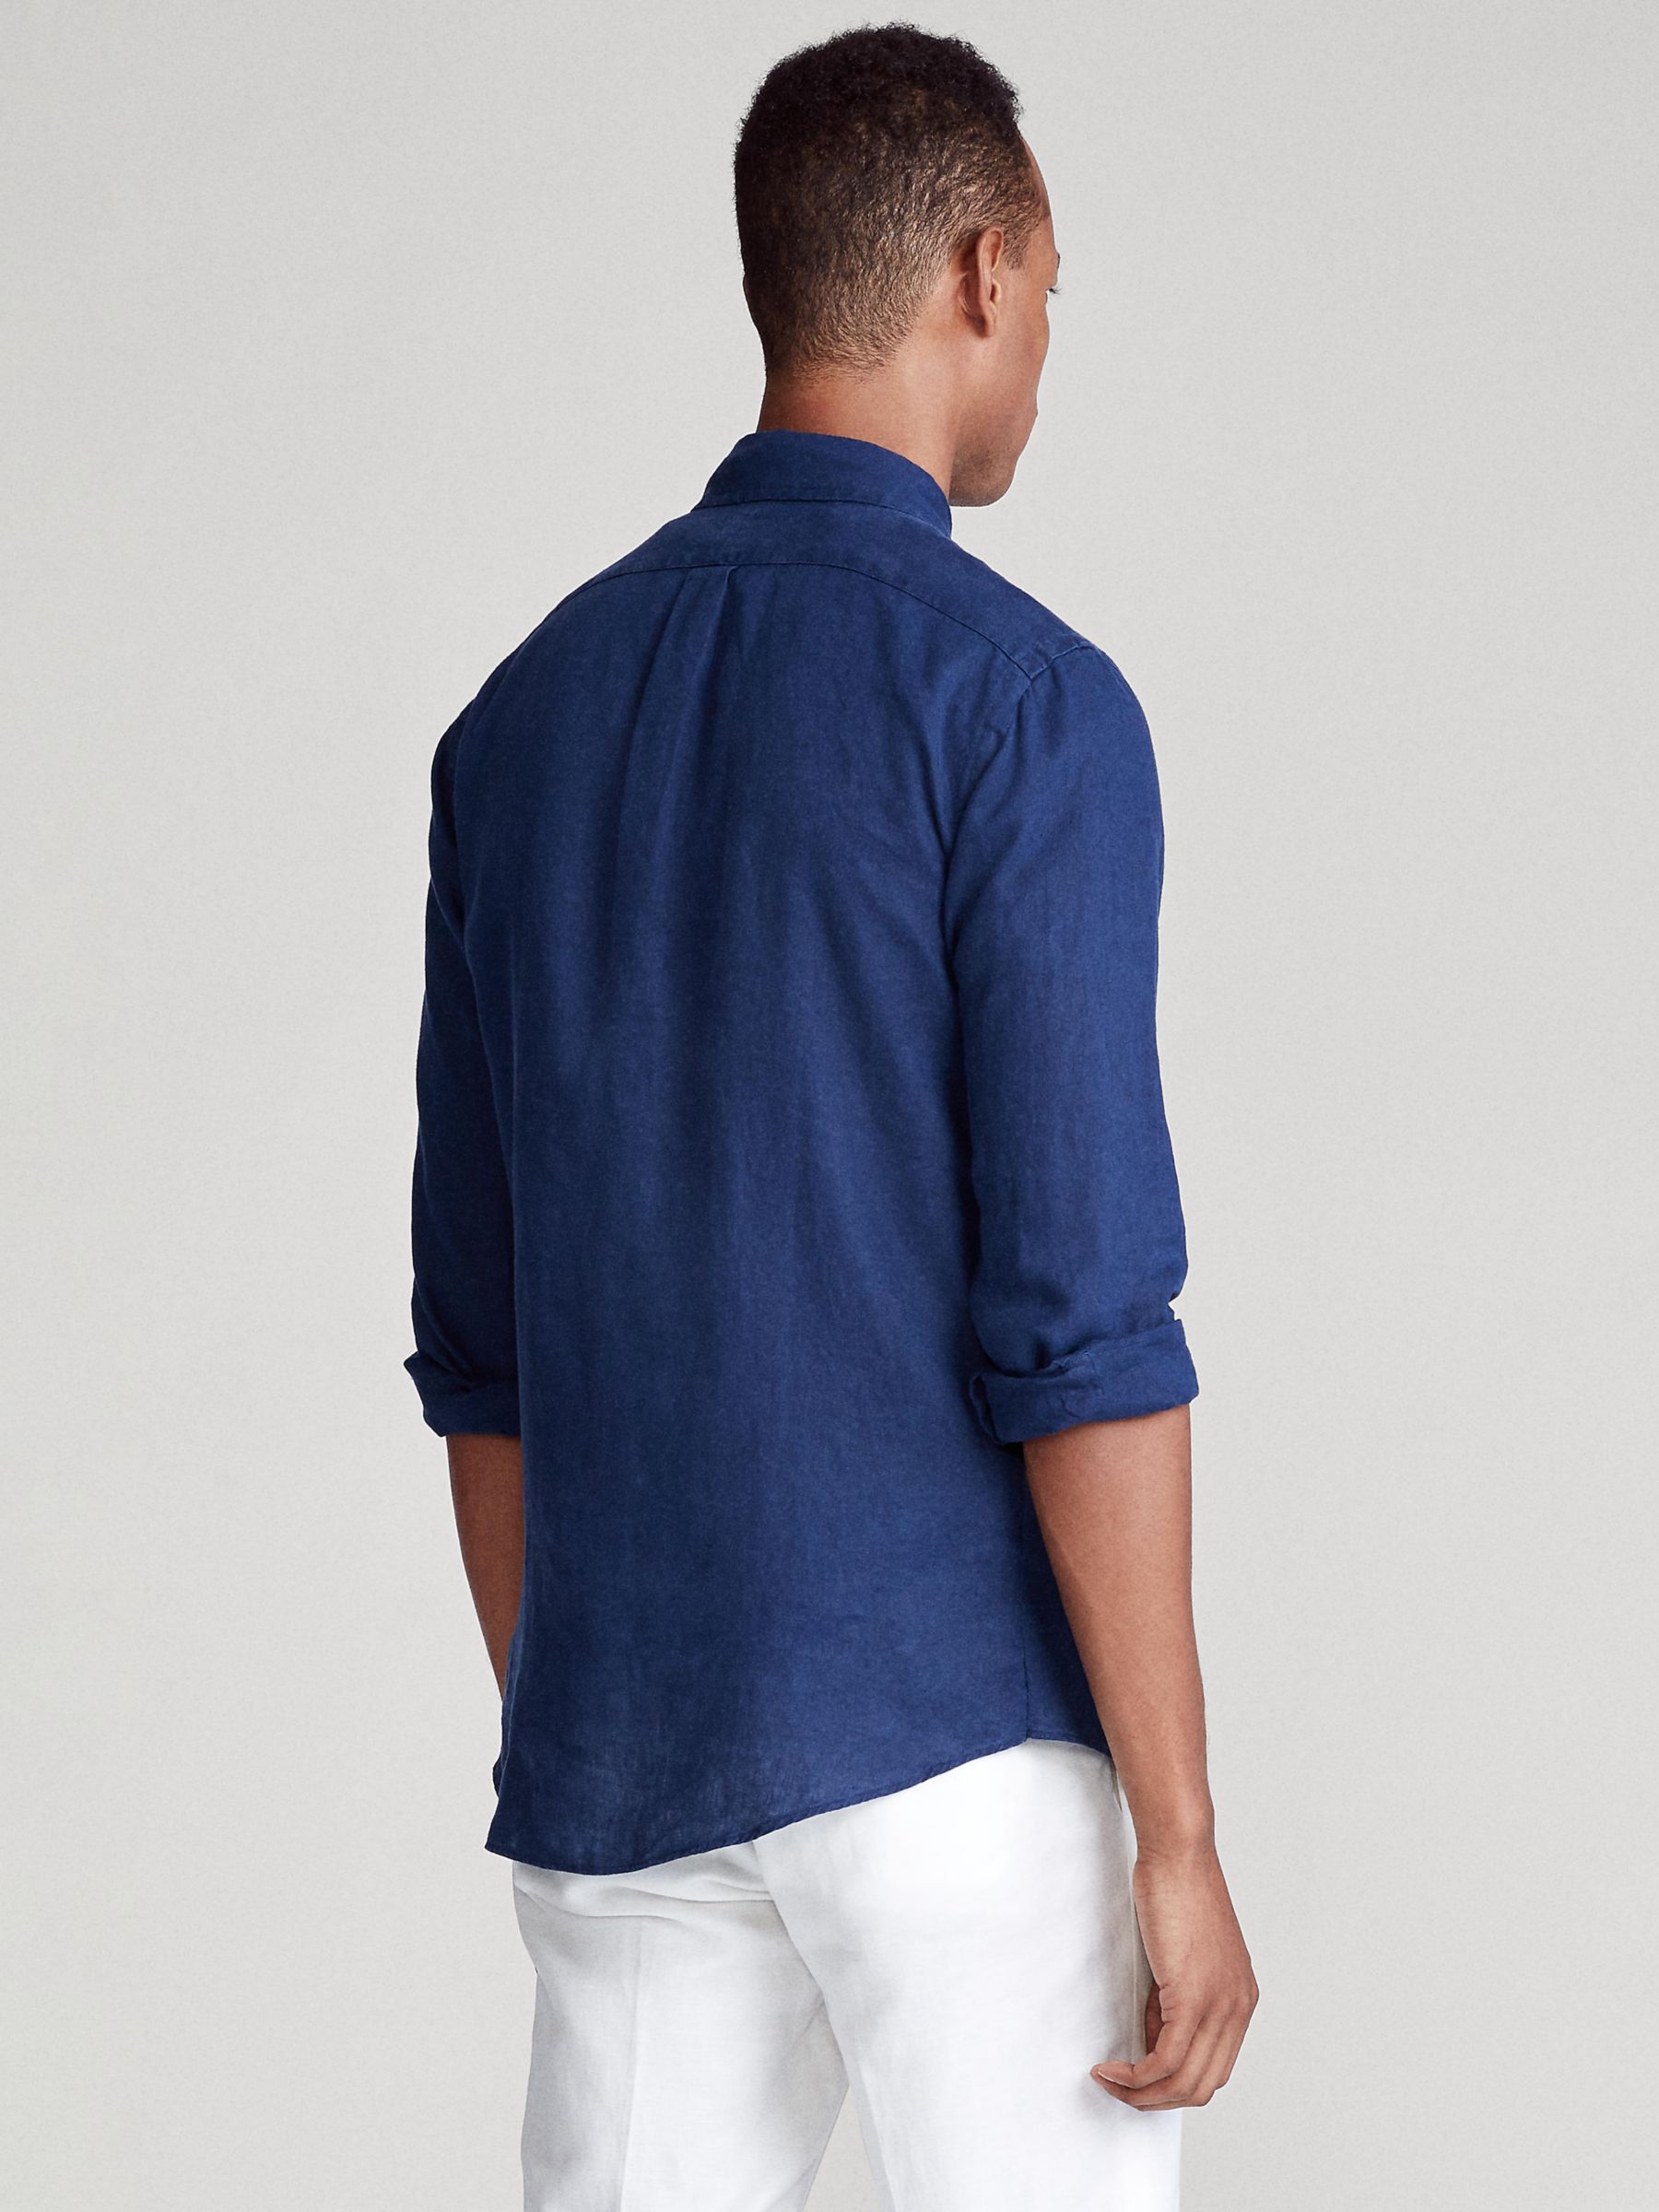 Buy Polo Ralph Lauren Linen Shirt Online at johnlewis.com